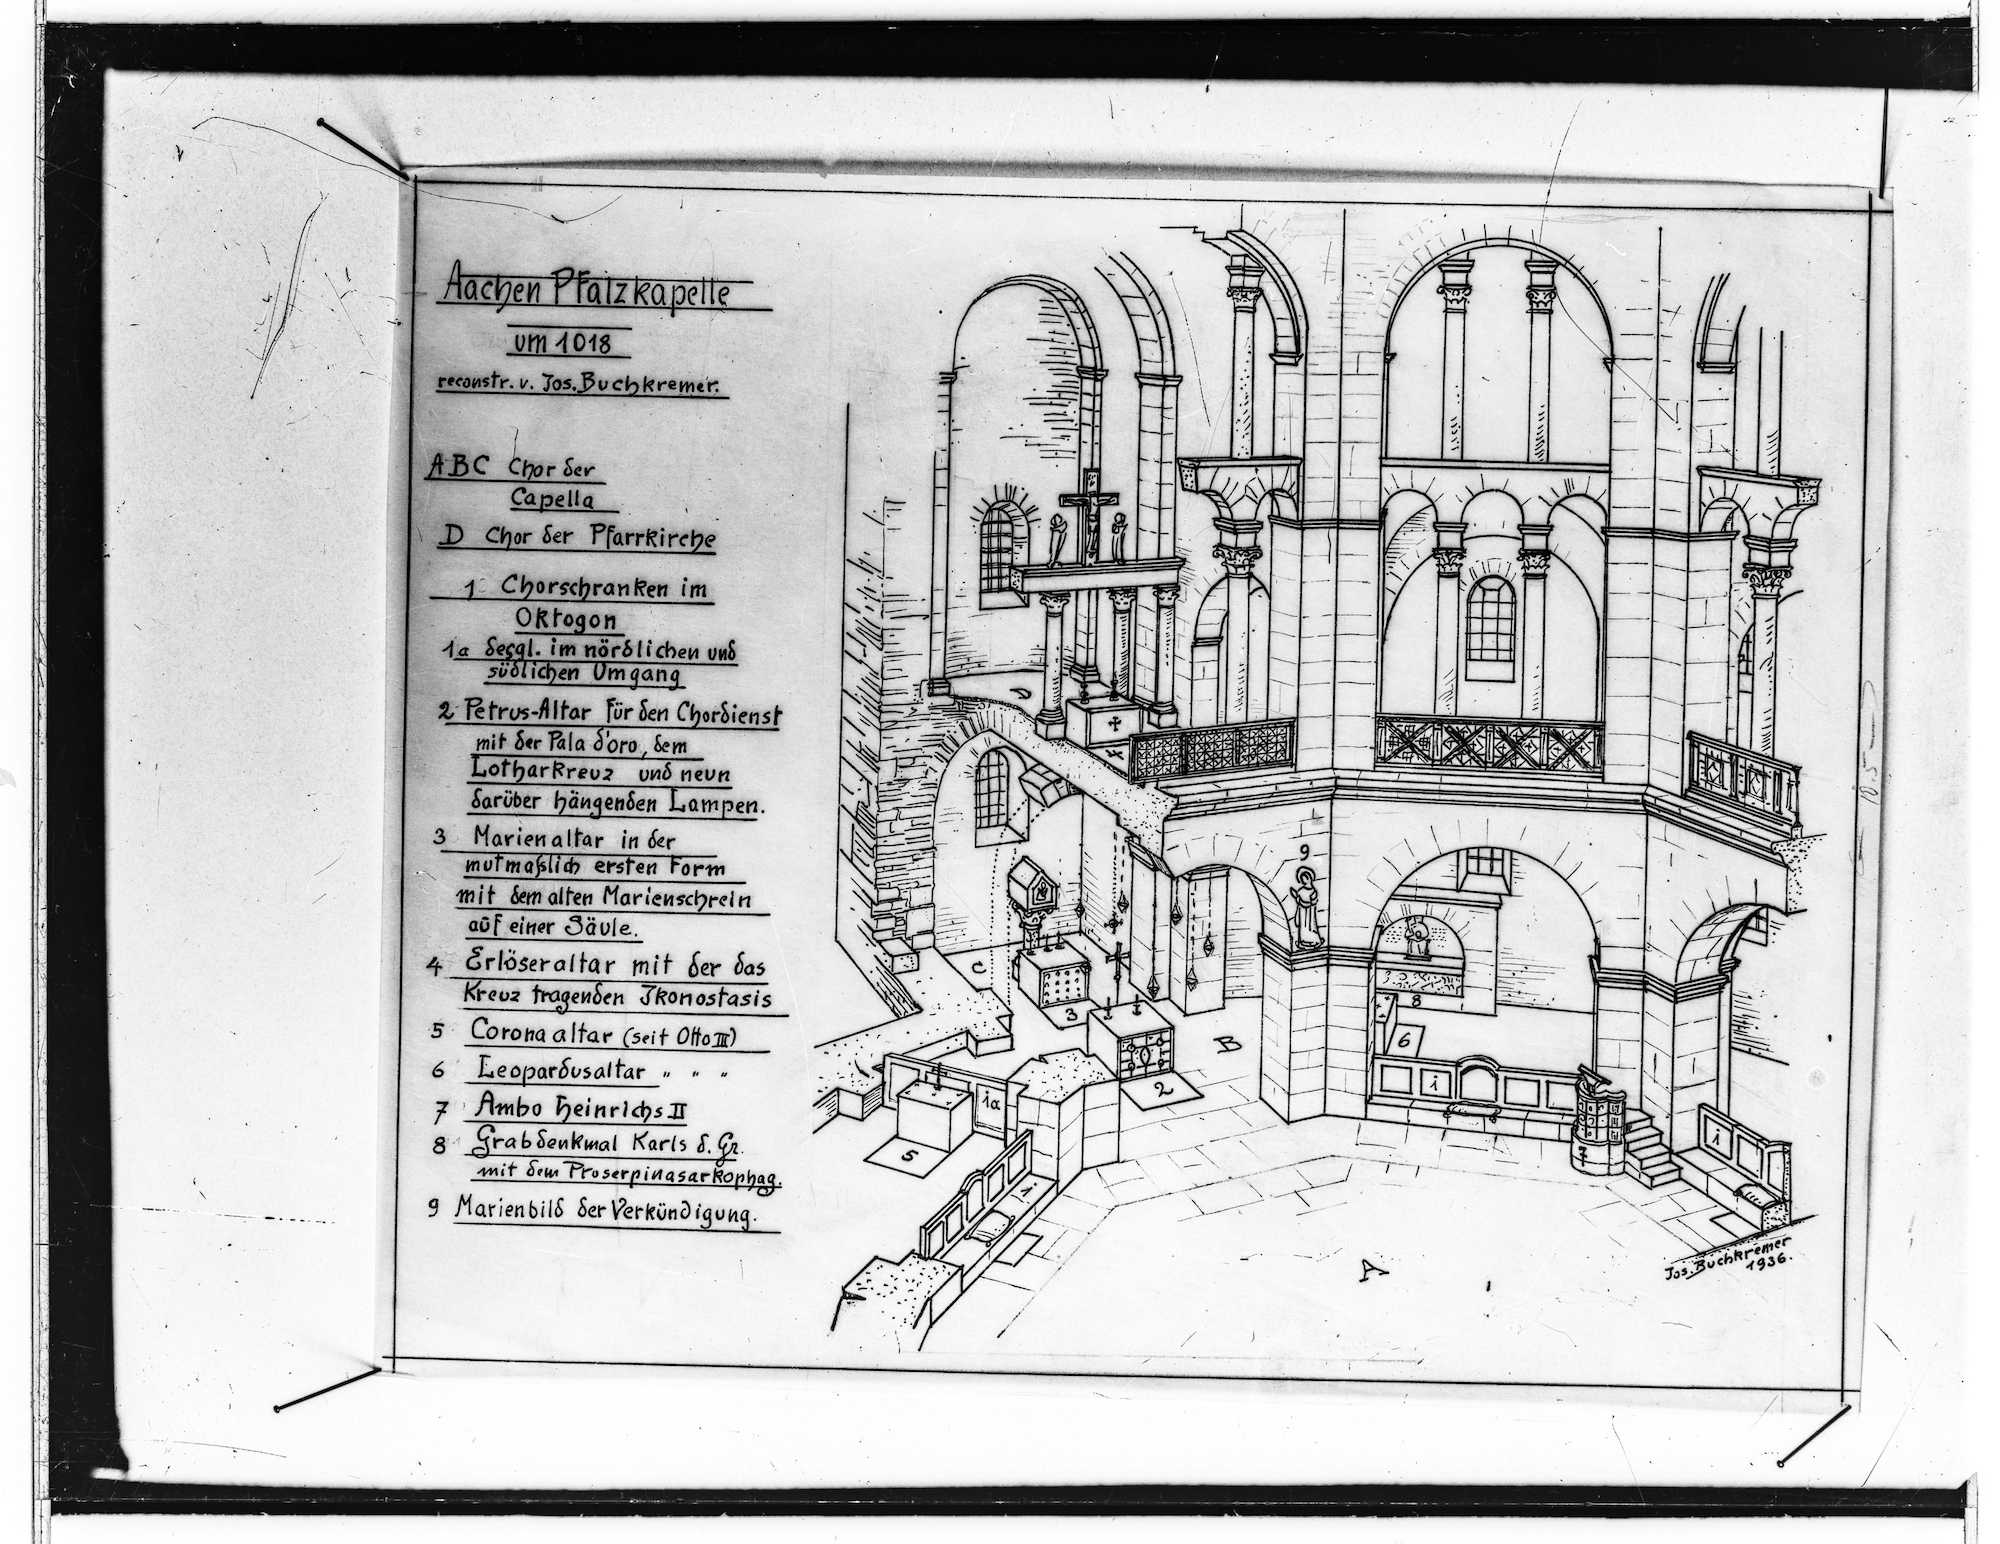 Der heutige Aachener Dom zu Beginn des 11. Jahrhunderts nach einer Rekonstruktion von Buchkremer. (c) Fotosammlung der Domschatzkammer